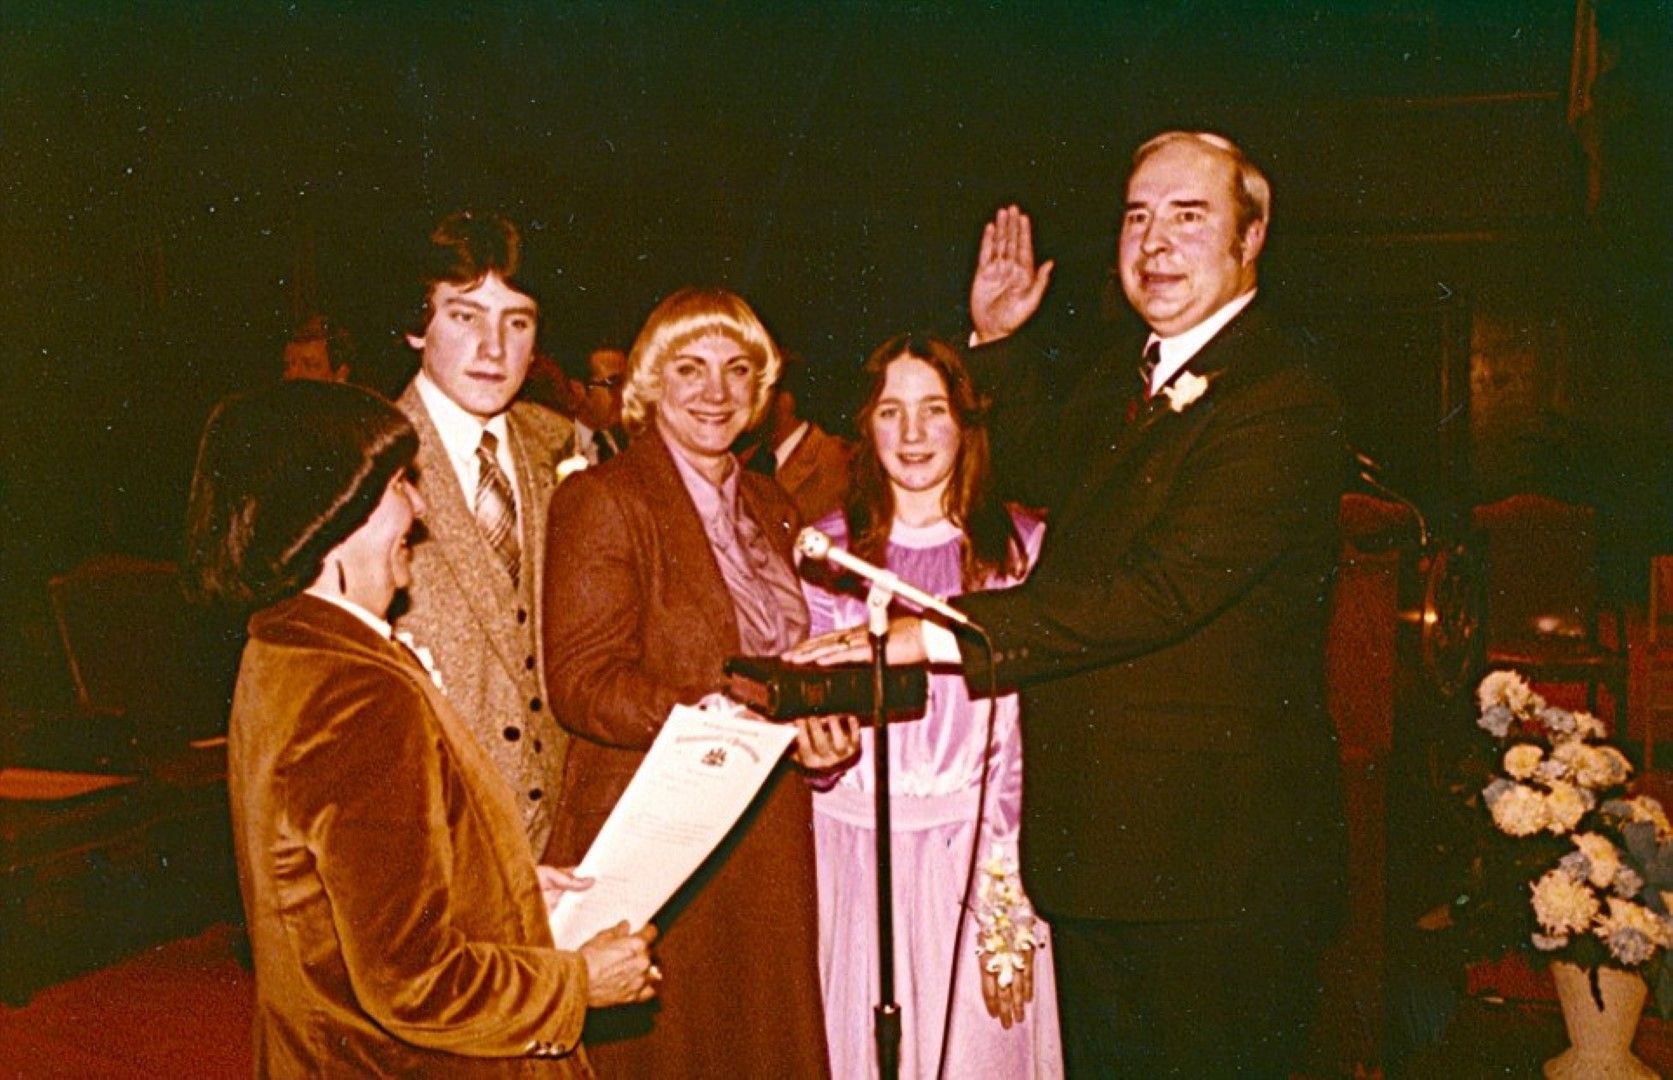 През 1984 година Дуайър полага клетва като държавен ковчежник за втори мандат